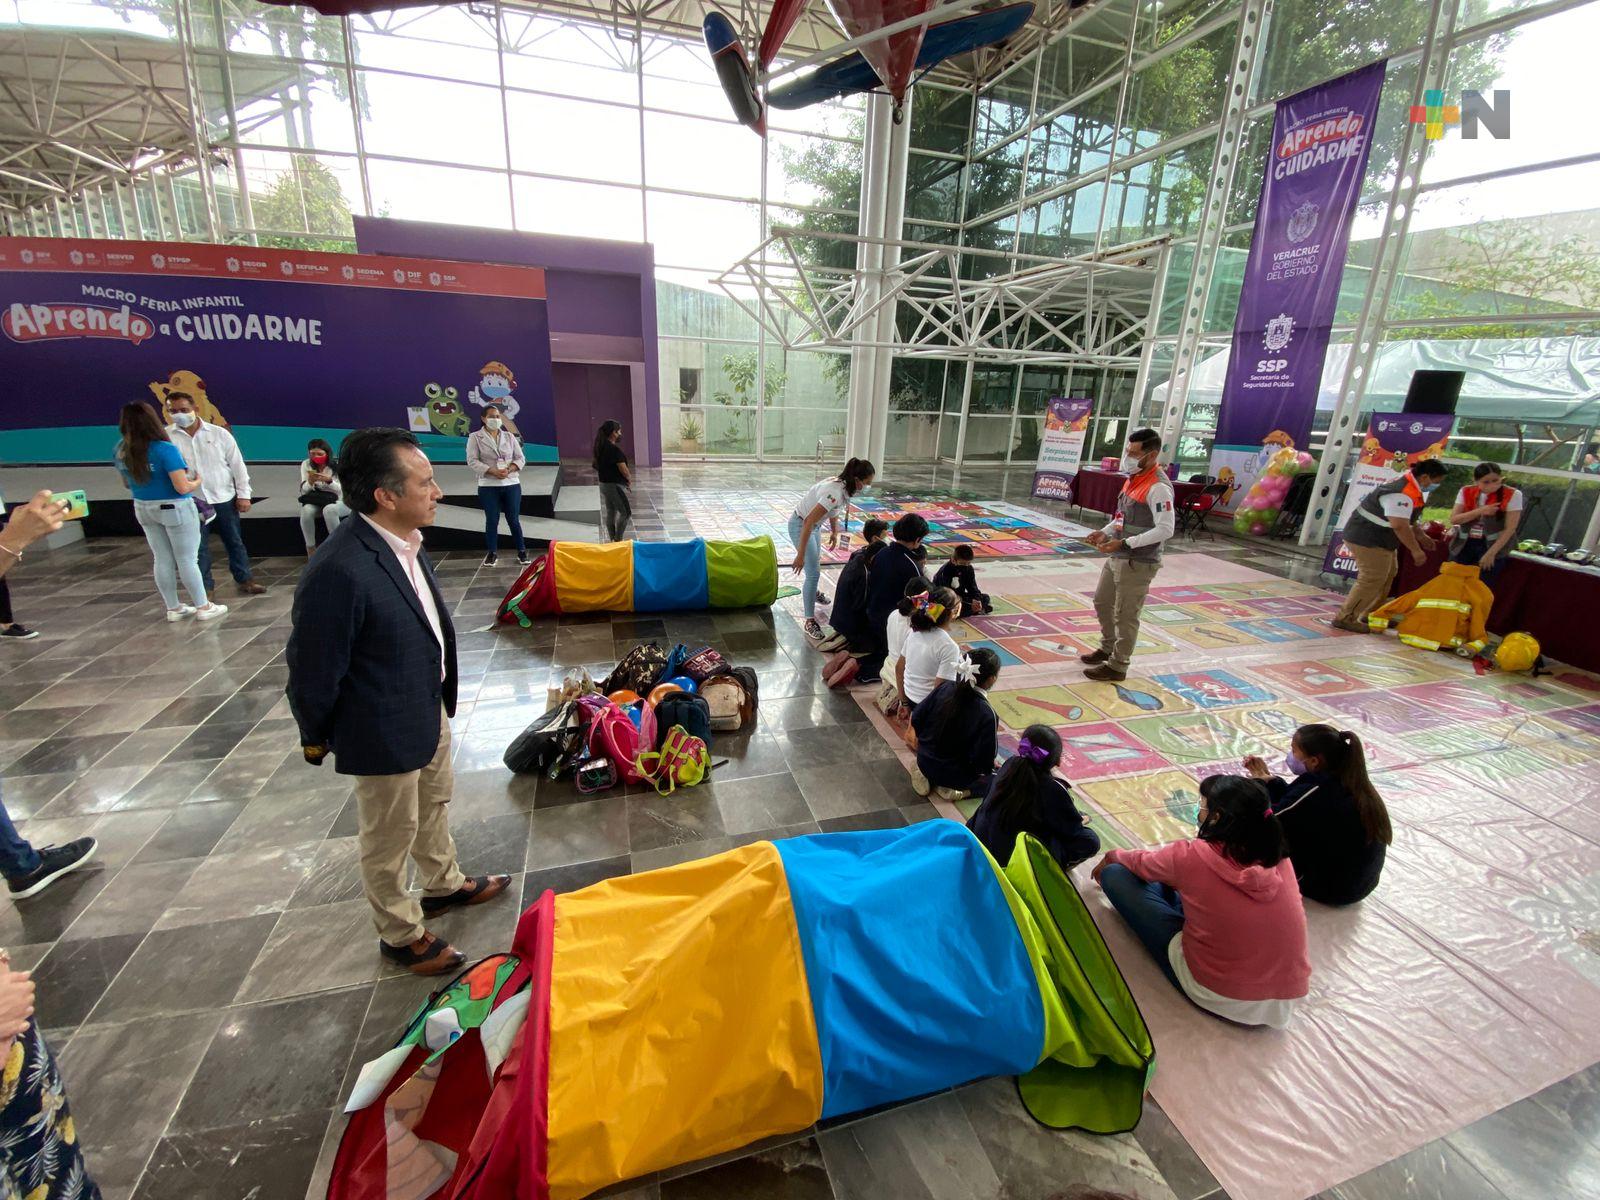 Gobernador Cuitláhuac García visita de nueva cuenta la Macro Feria Infantil “Aprendo a cuidarme”